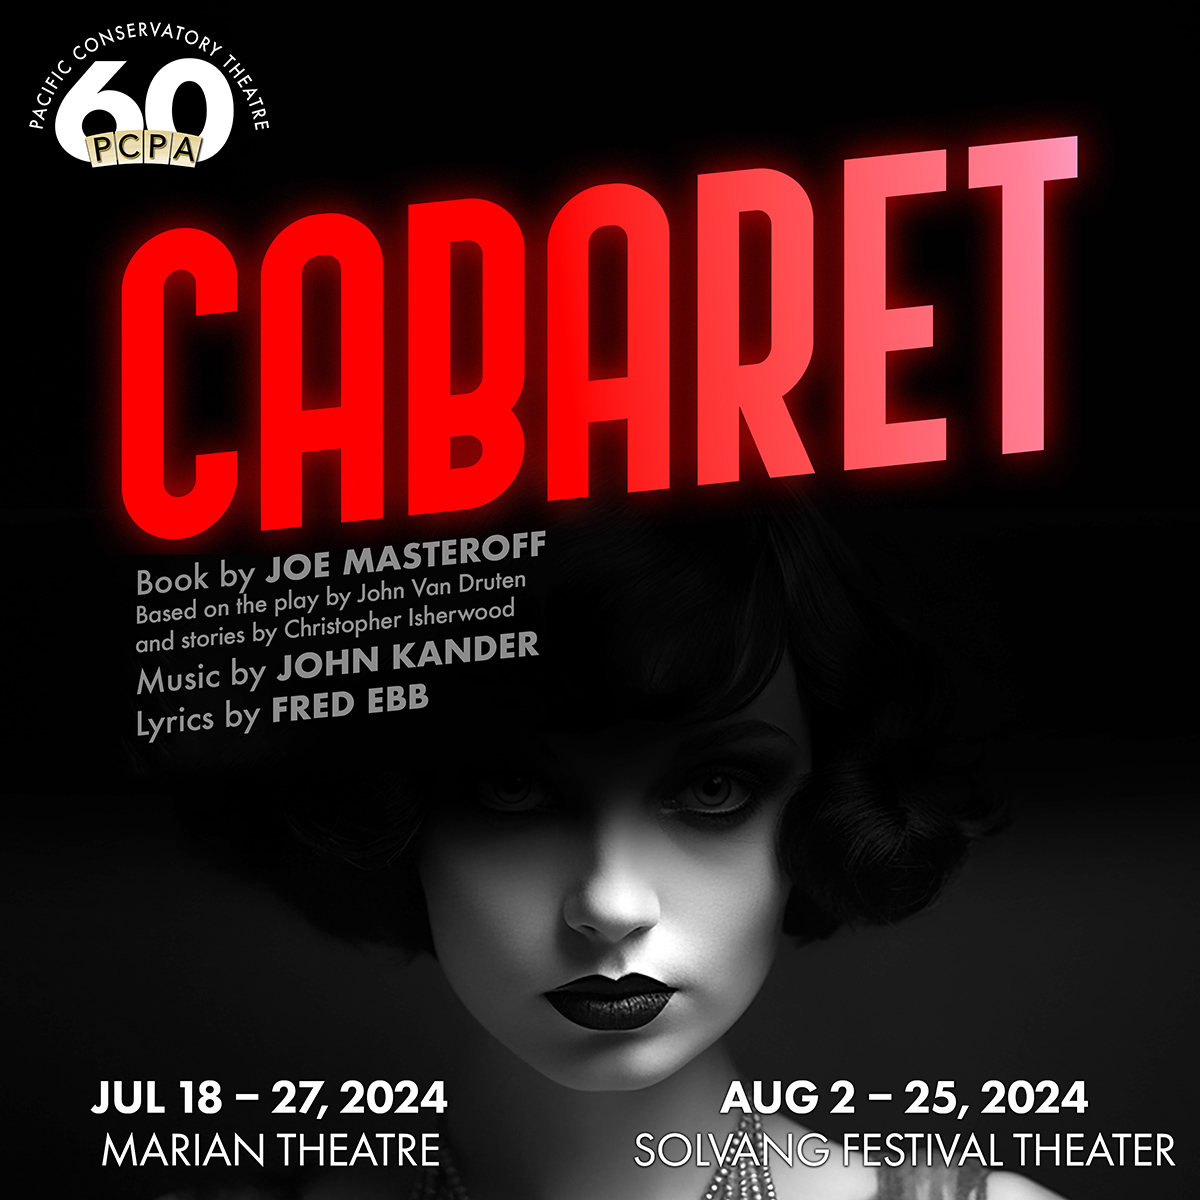 Poster Art for Cabaret